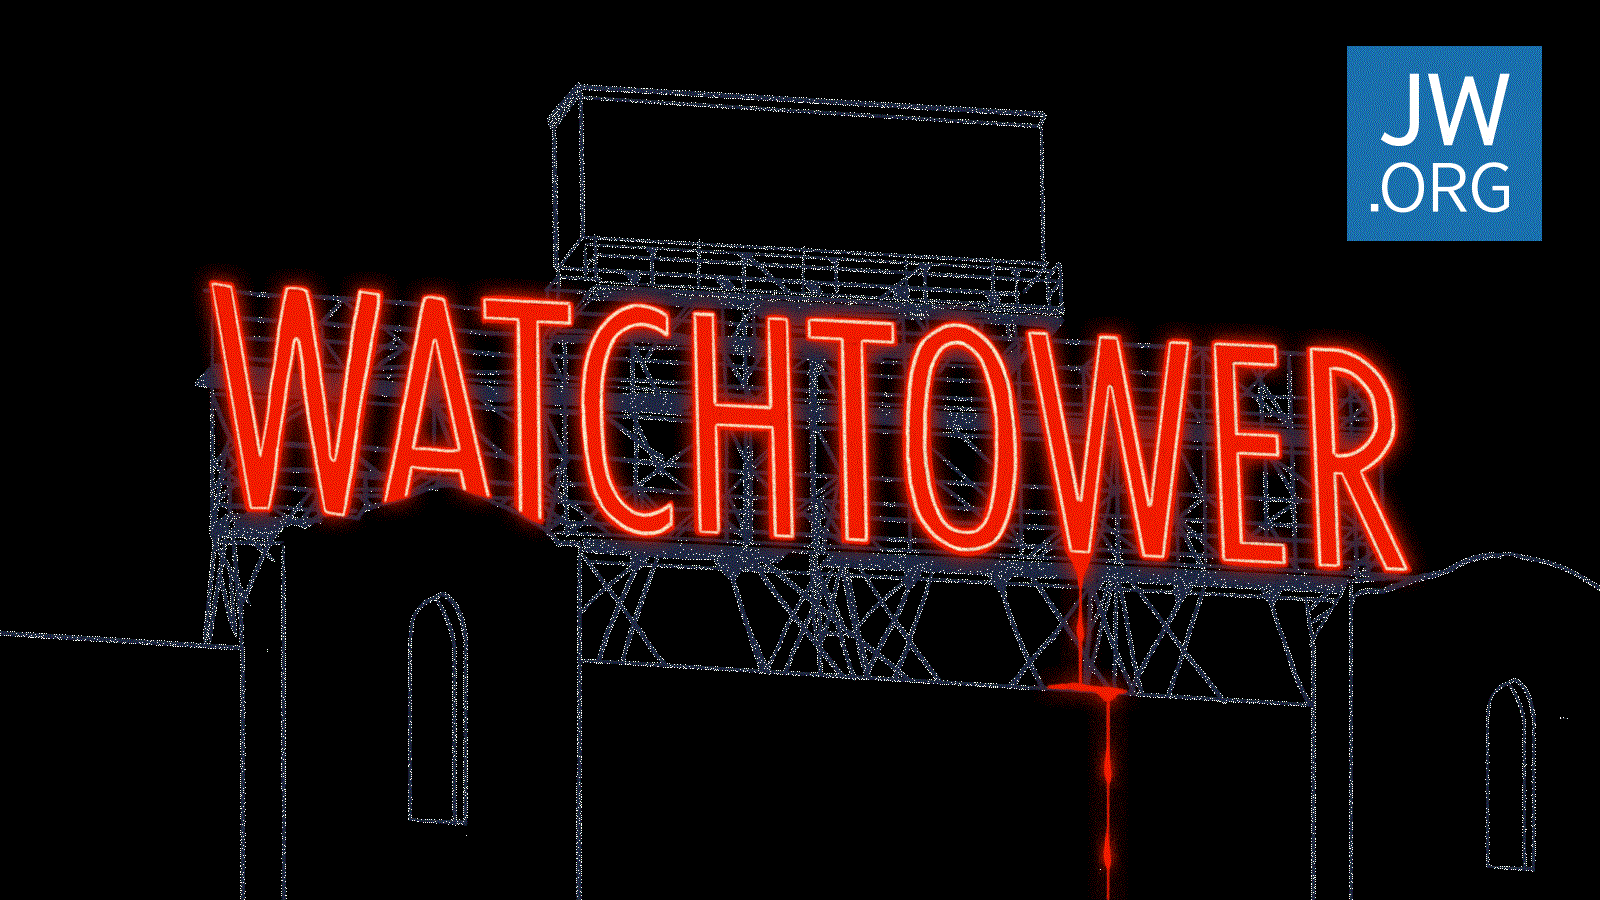 Kindesmissbrauch Der Fall des Wachtturms Detaillierte Dokumente über das interne Rechtsverfahren JW.ORG Jehovas Zeugen Wahrheiten jetzt! Jehovas Zeugen - Geschworene verklagen die Wachtturm-Organisation aufgrund von Kindesmissbrauch zu 35 Millionen US-Dollar